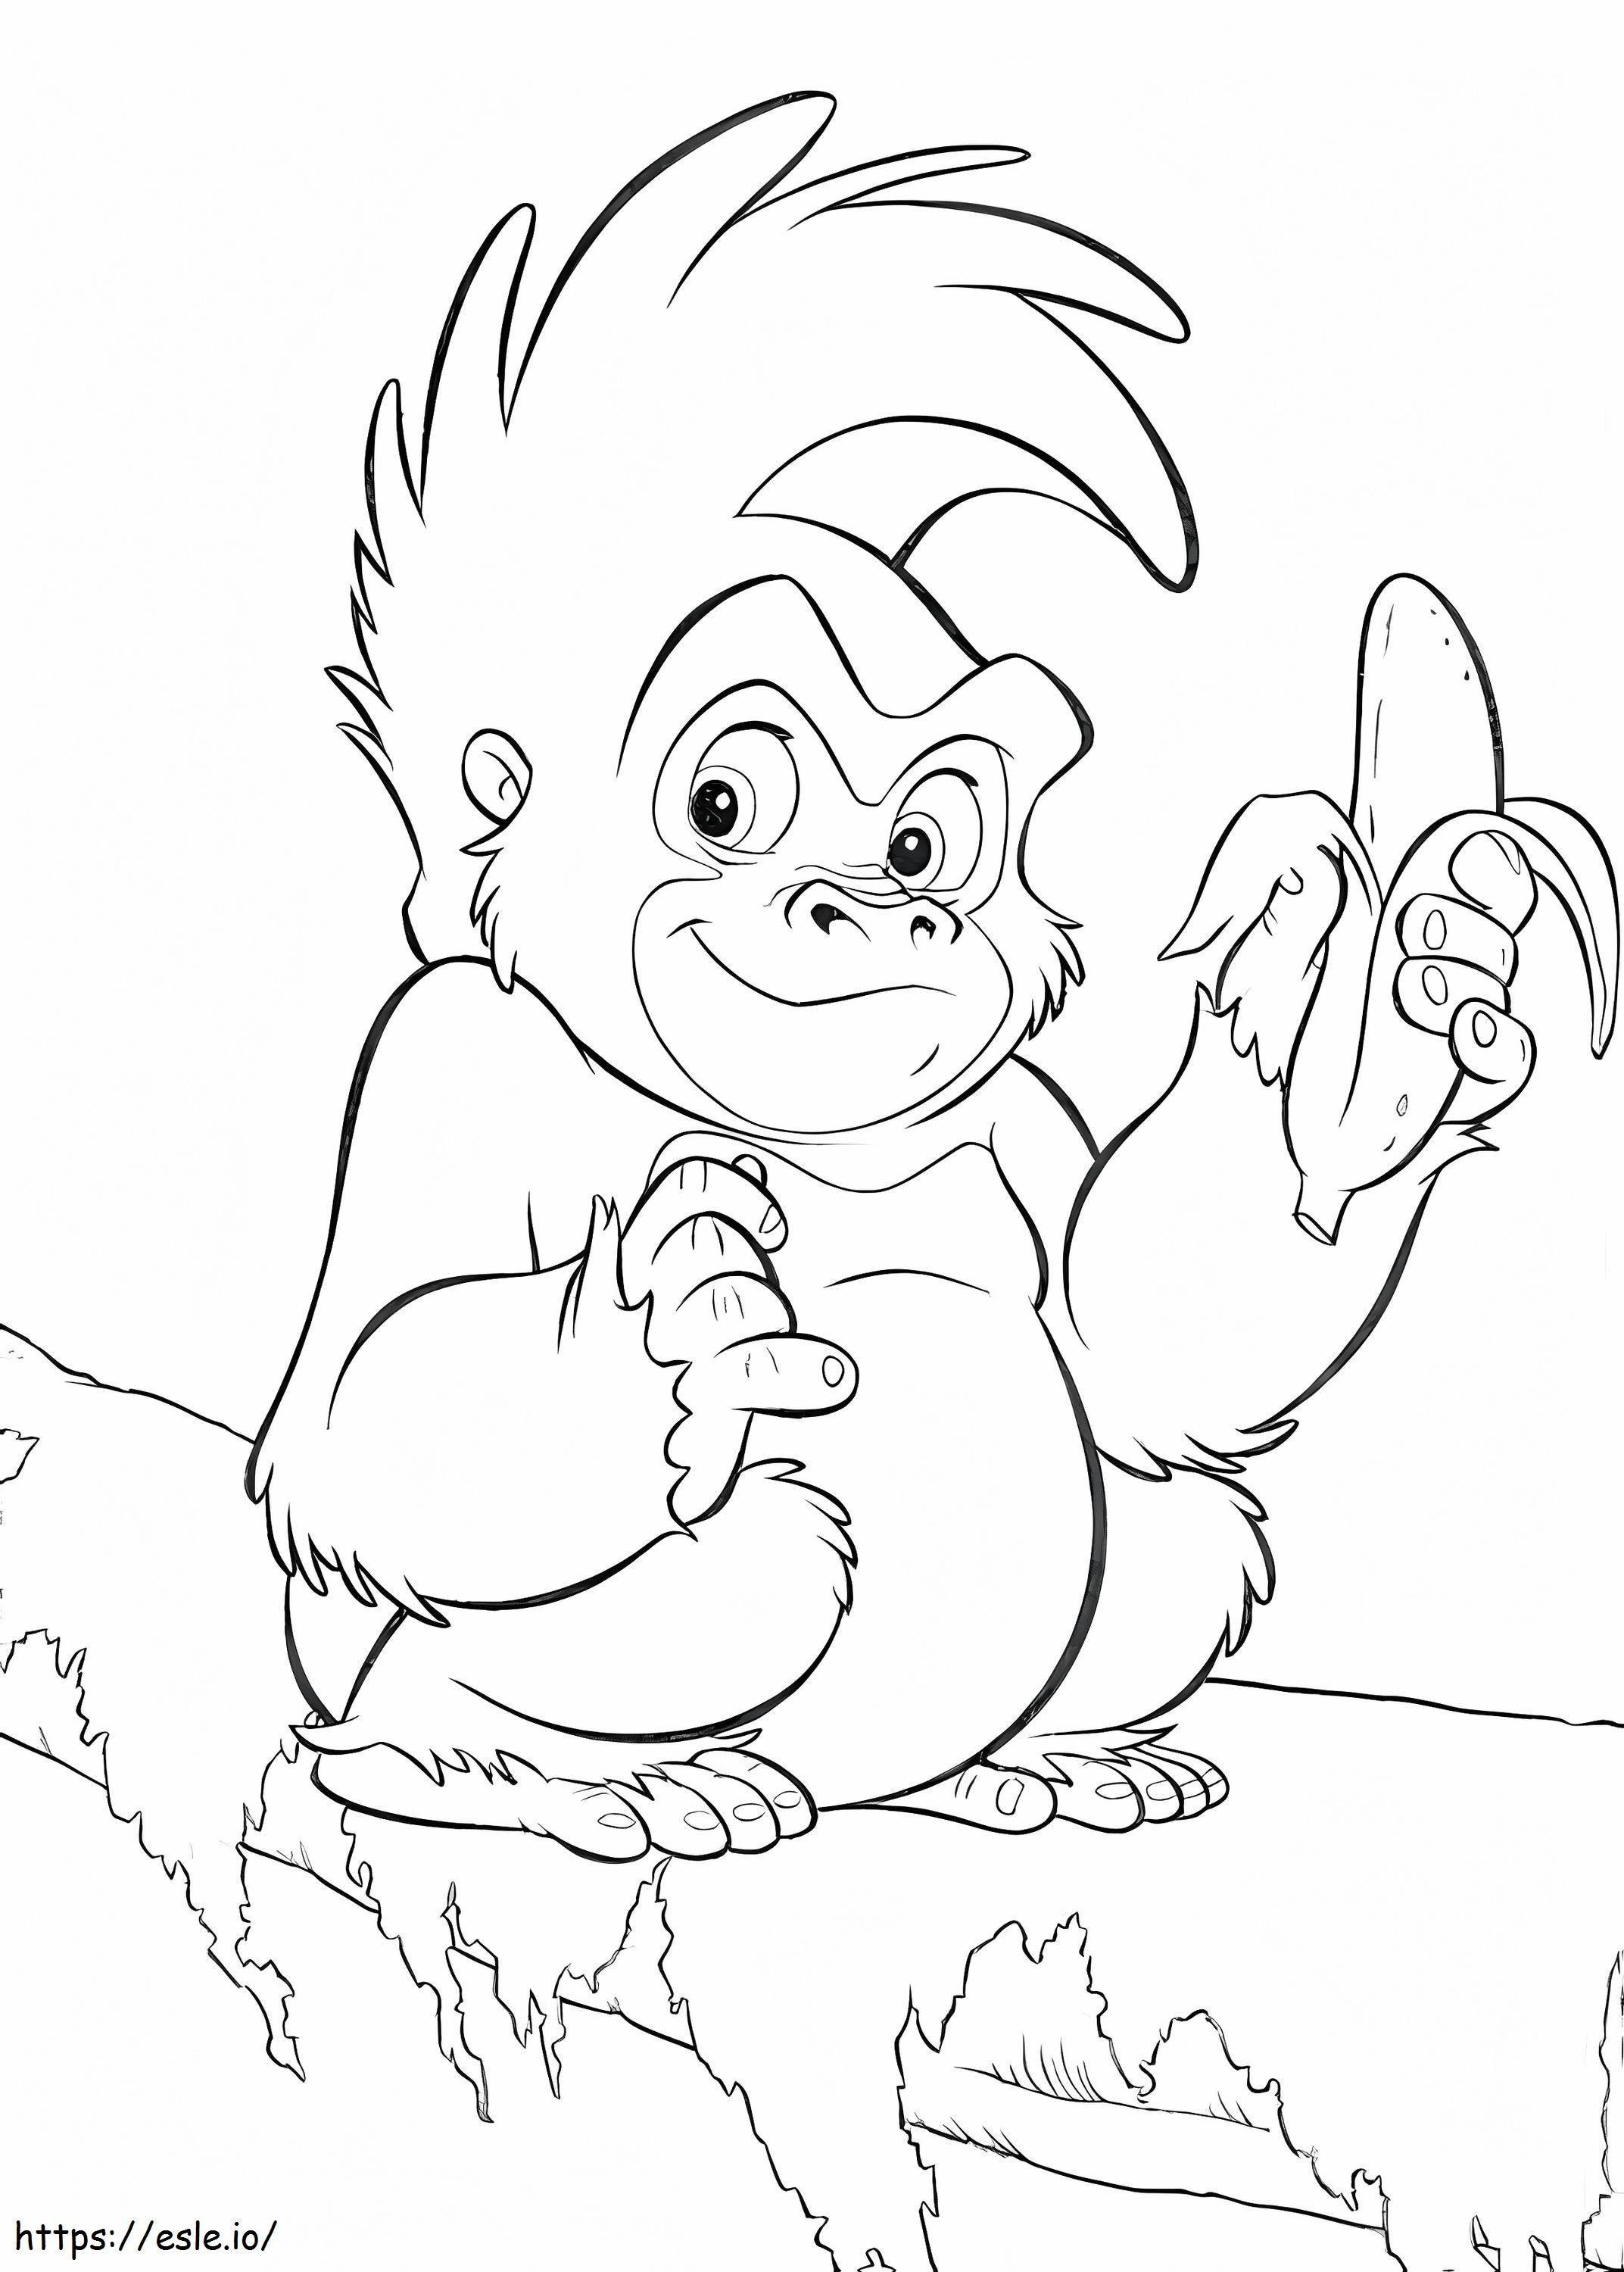 Muz tutan karikatür goril boyama